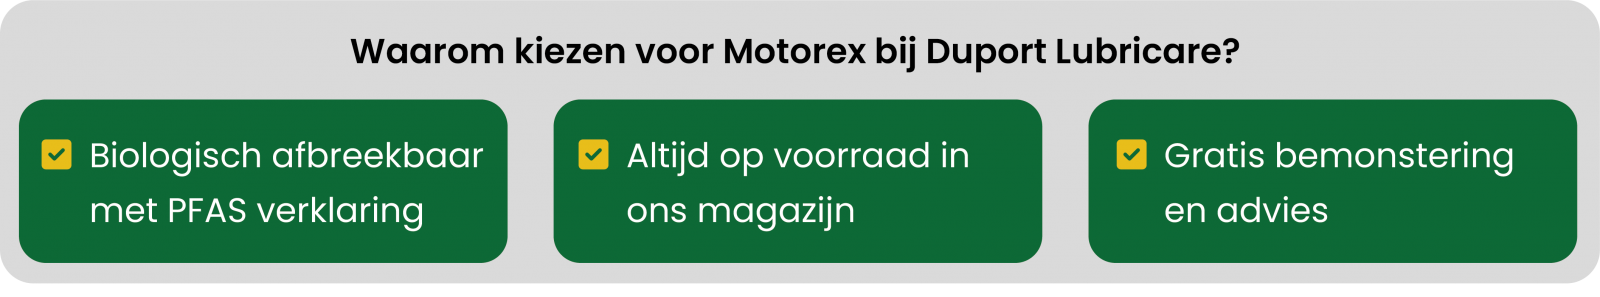 Waarom kiezen voor Motorex bij Duport Lubricare?